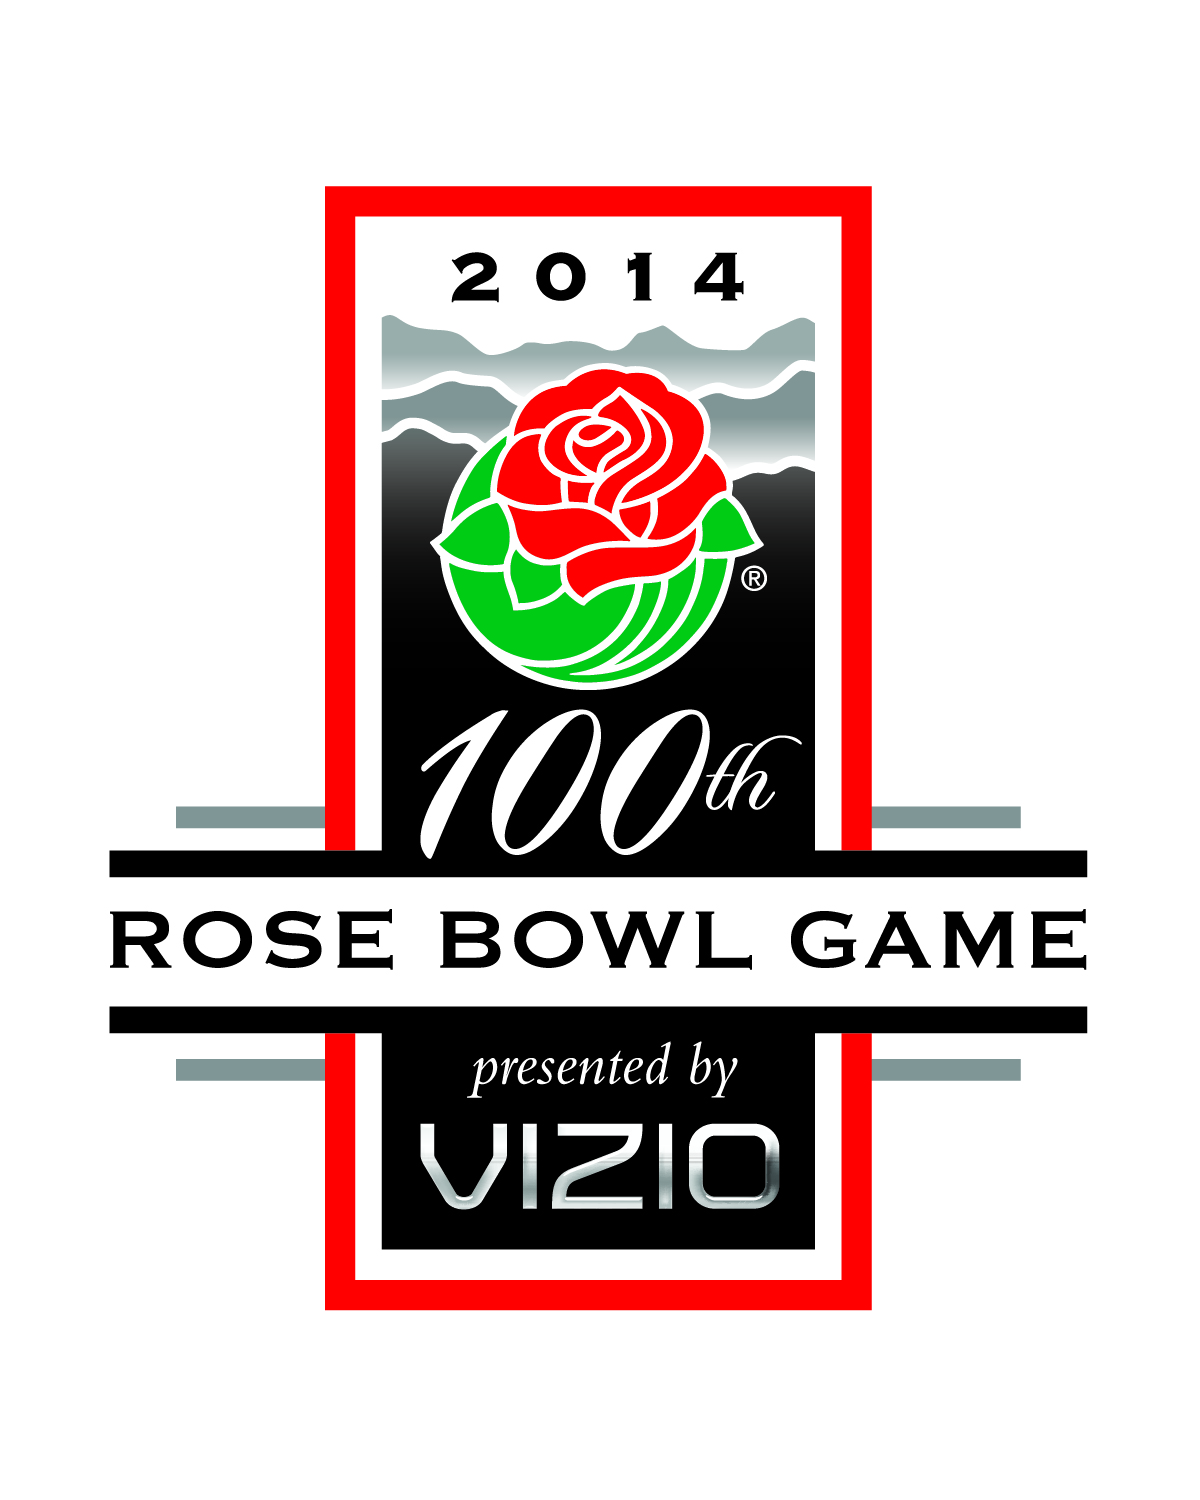 100th rose bowl logo